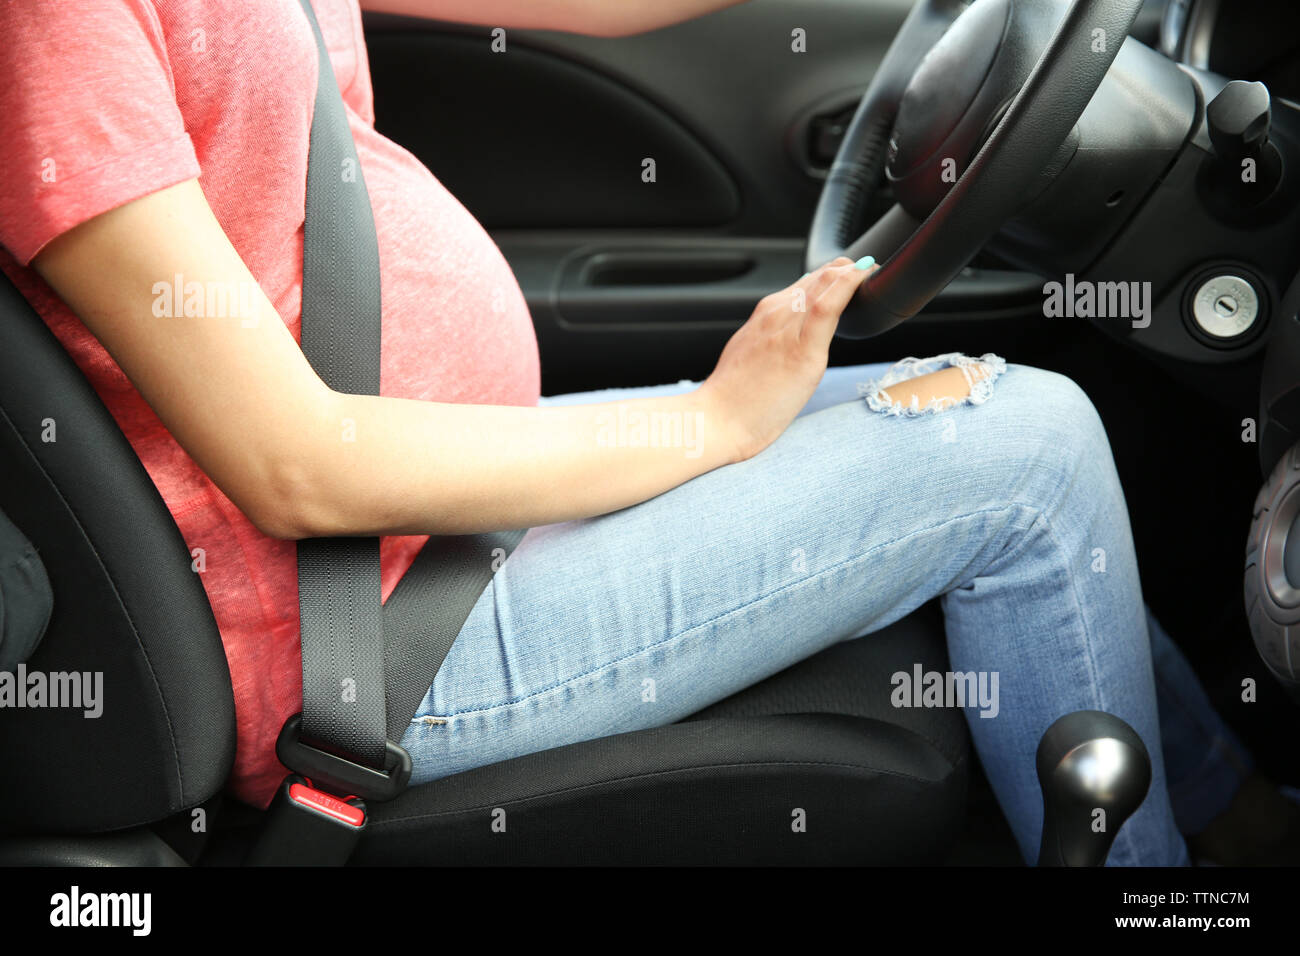 Schwangere Frau fahren Auto. Sicherheit Antriebskonzept Stockfotografie -  Alamy